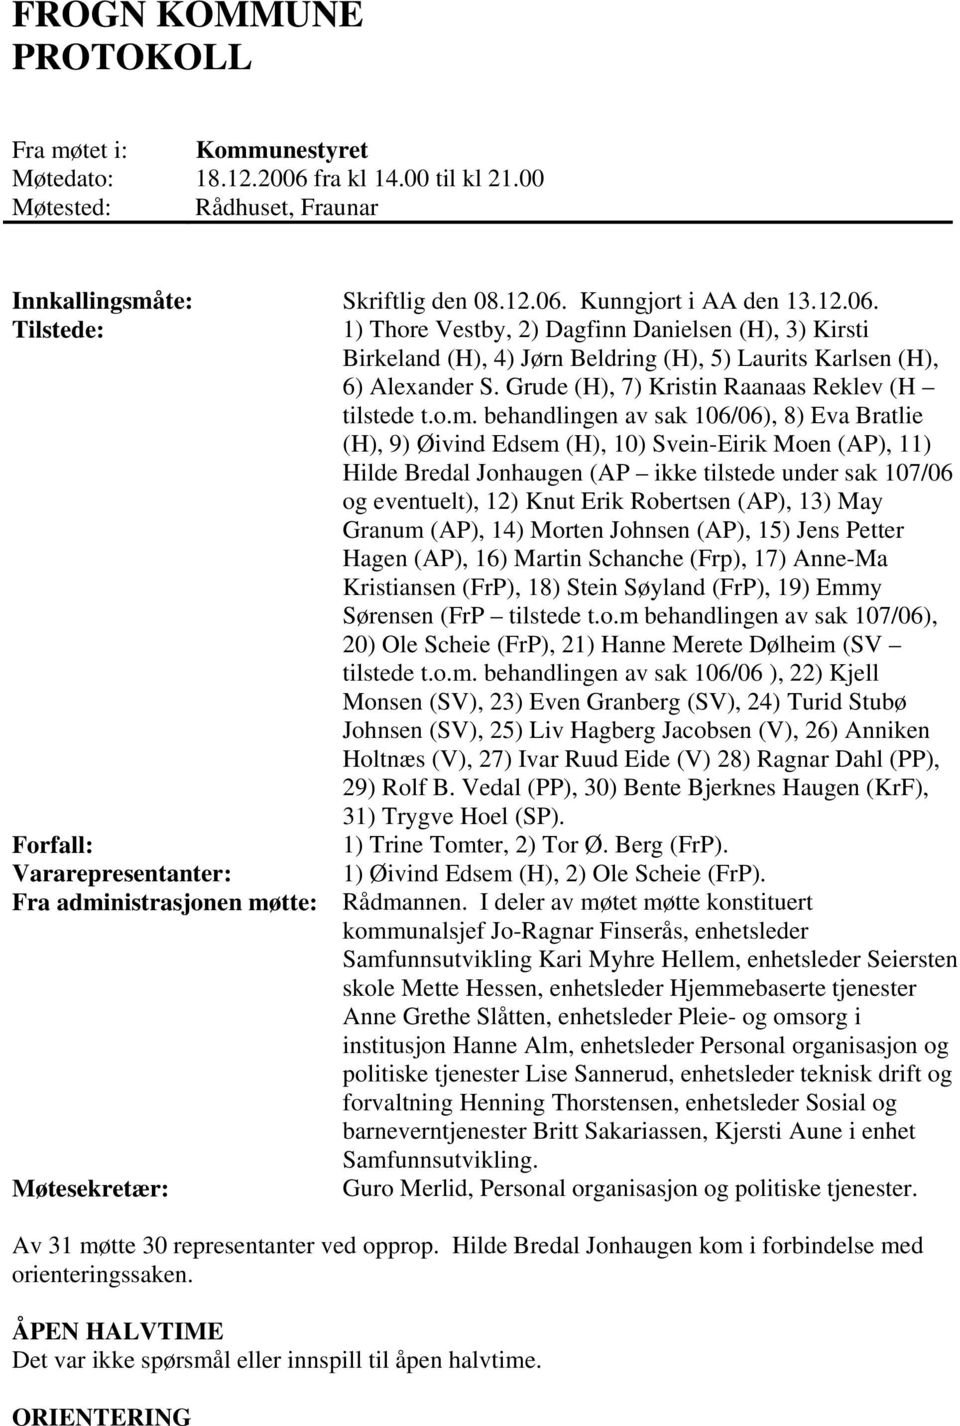 Kunngjort i AA den 13.12.06. Tilstede: 1) Thore Vestby, 2) Dagfinn Danielsen (H), 3) Kirsti Birkeland (H), 4) Jørn Beldring (H), 5) Laurits Karlsen (H), 6) Alexander S.